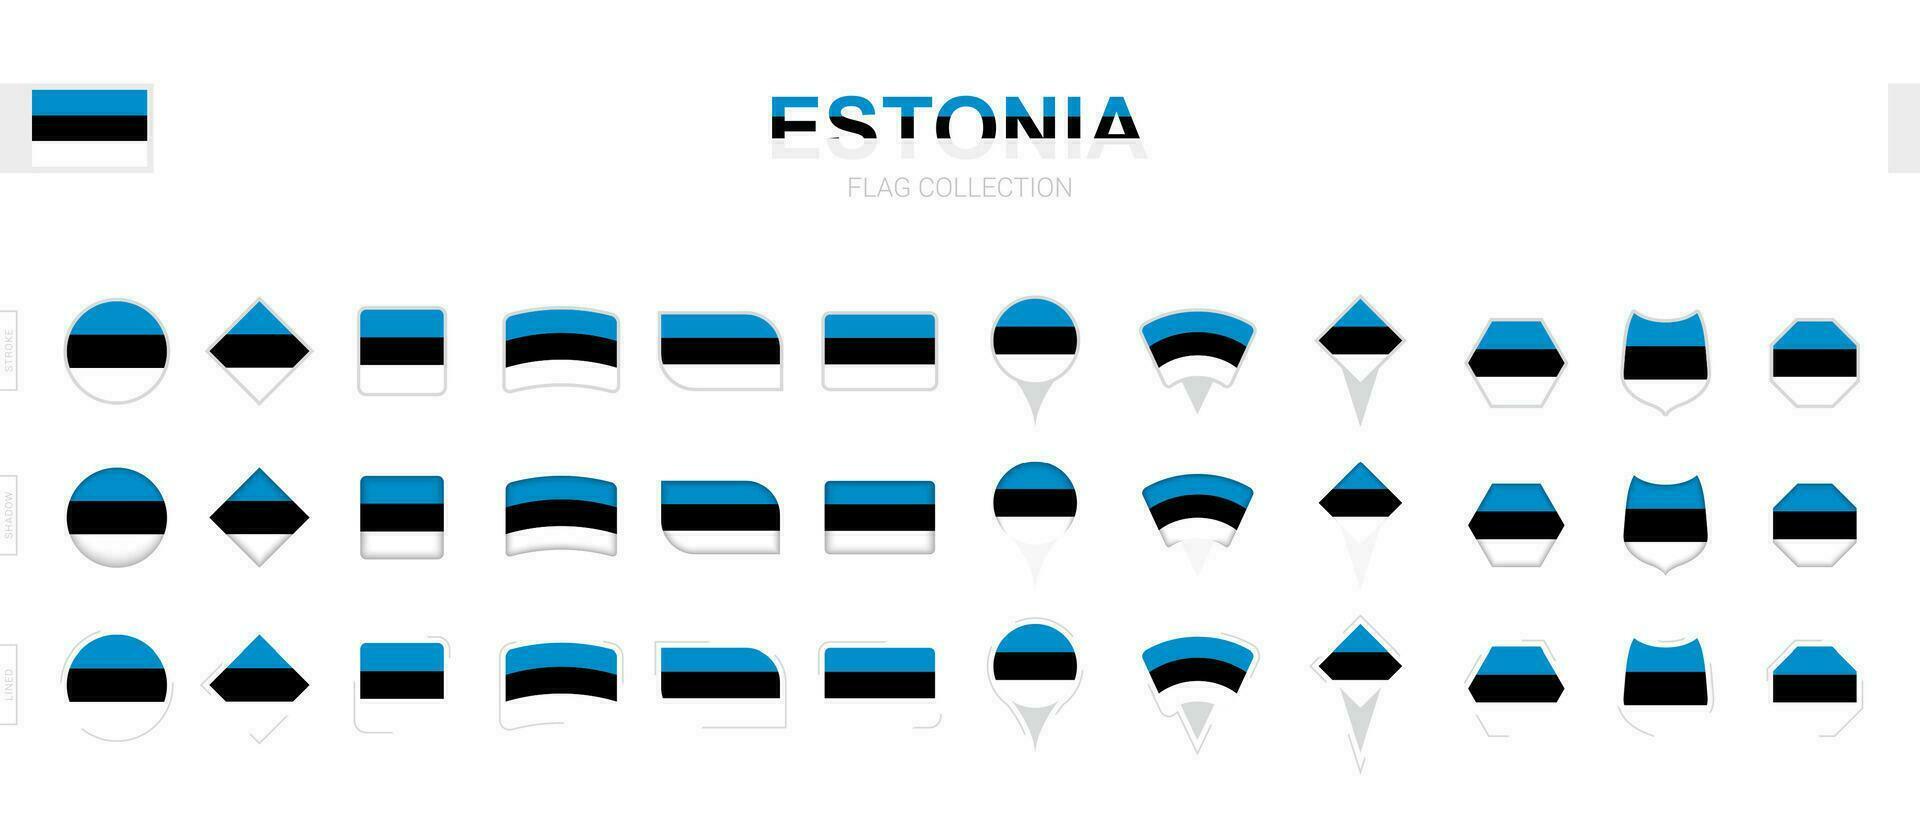 stor samling av estland flaggor av olika former och effekter. vektor